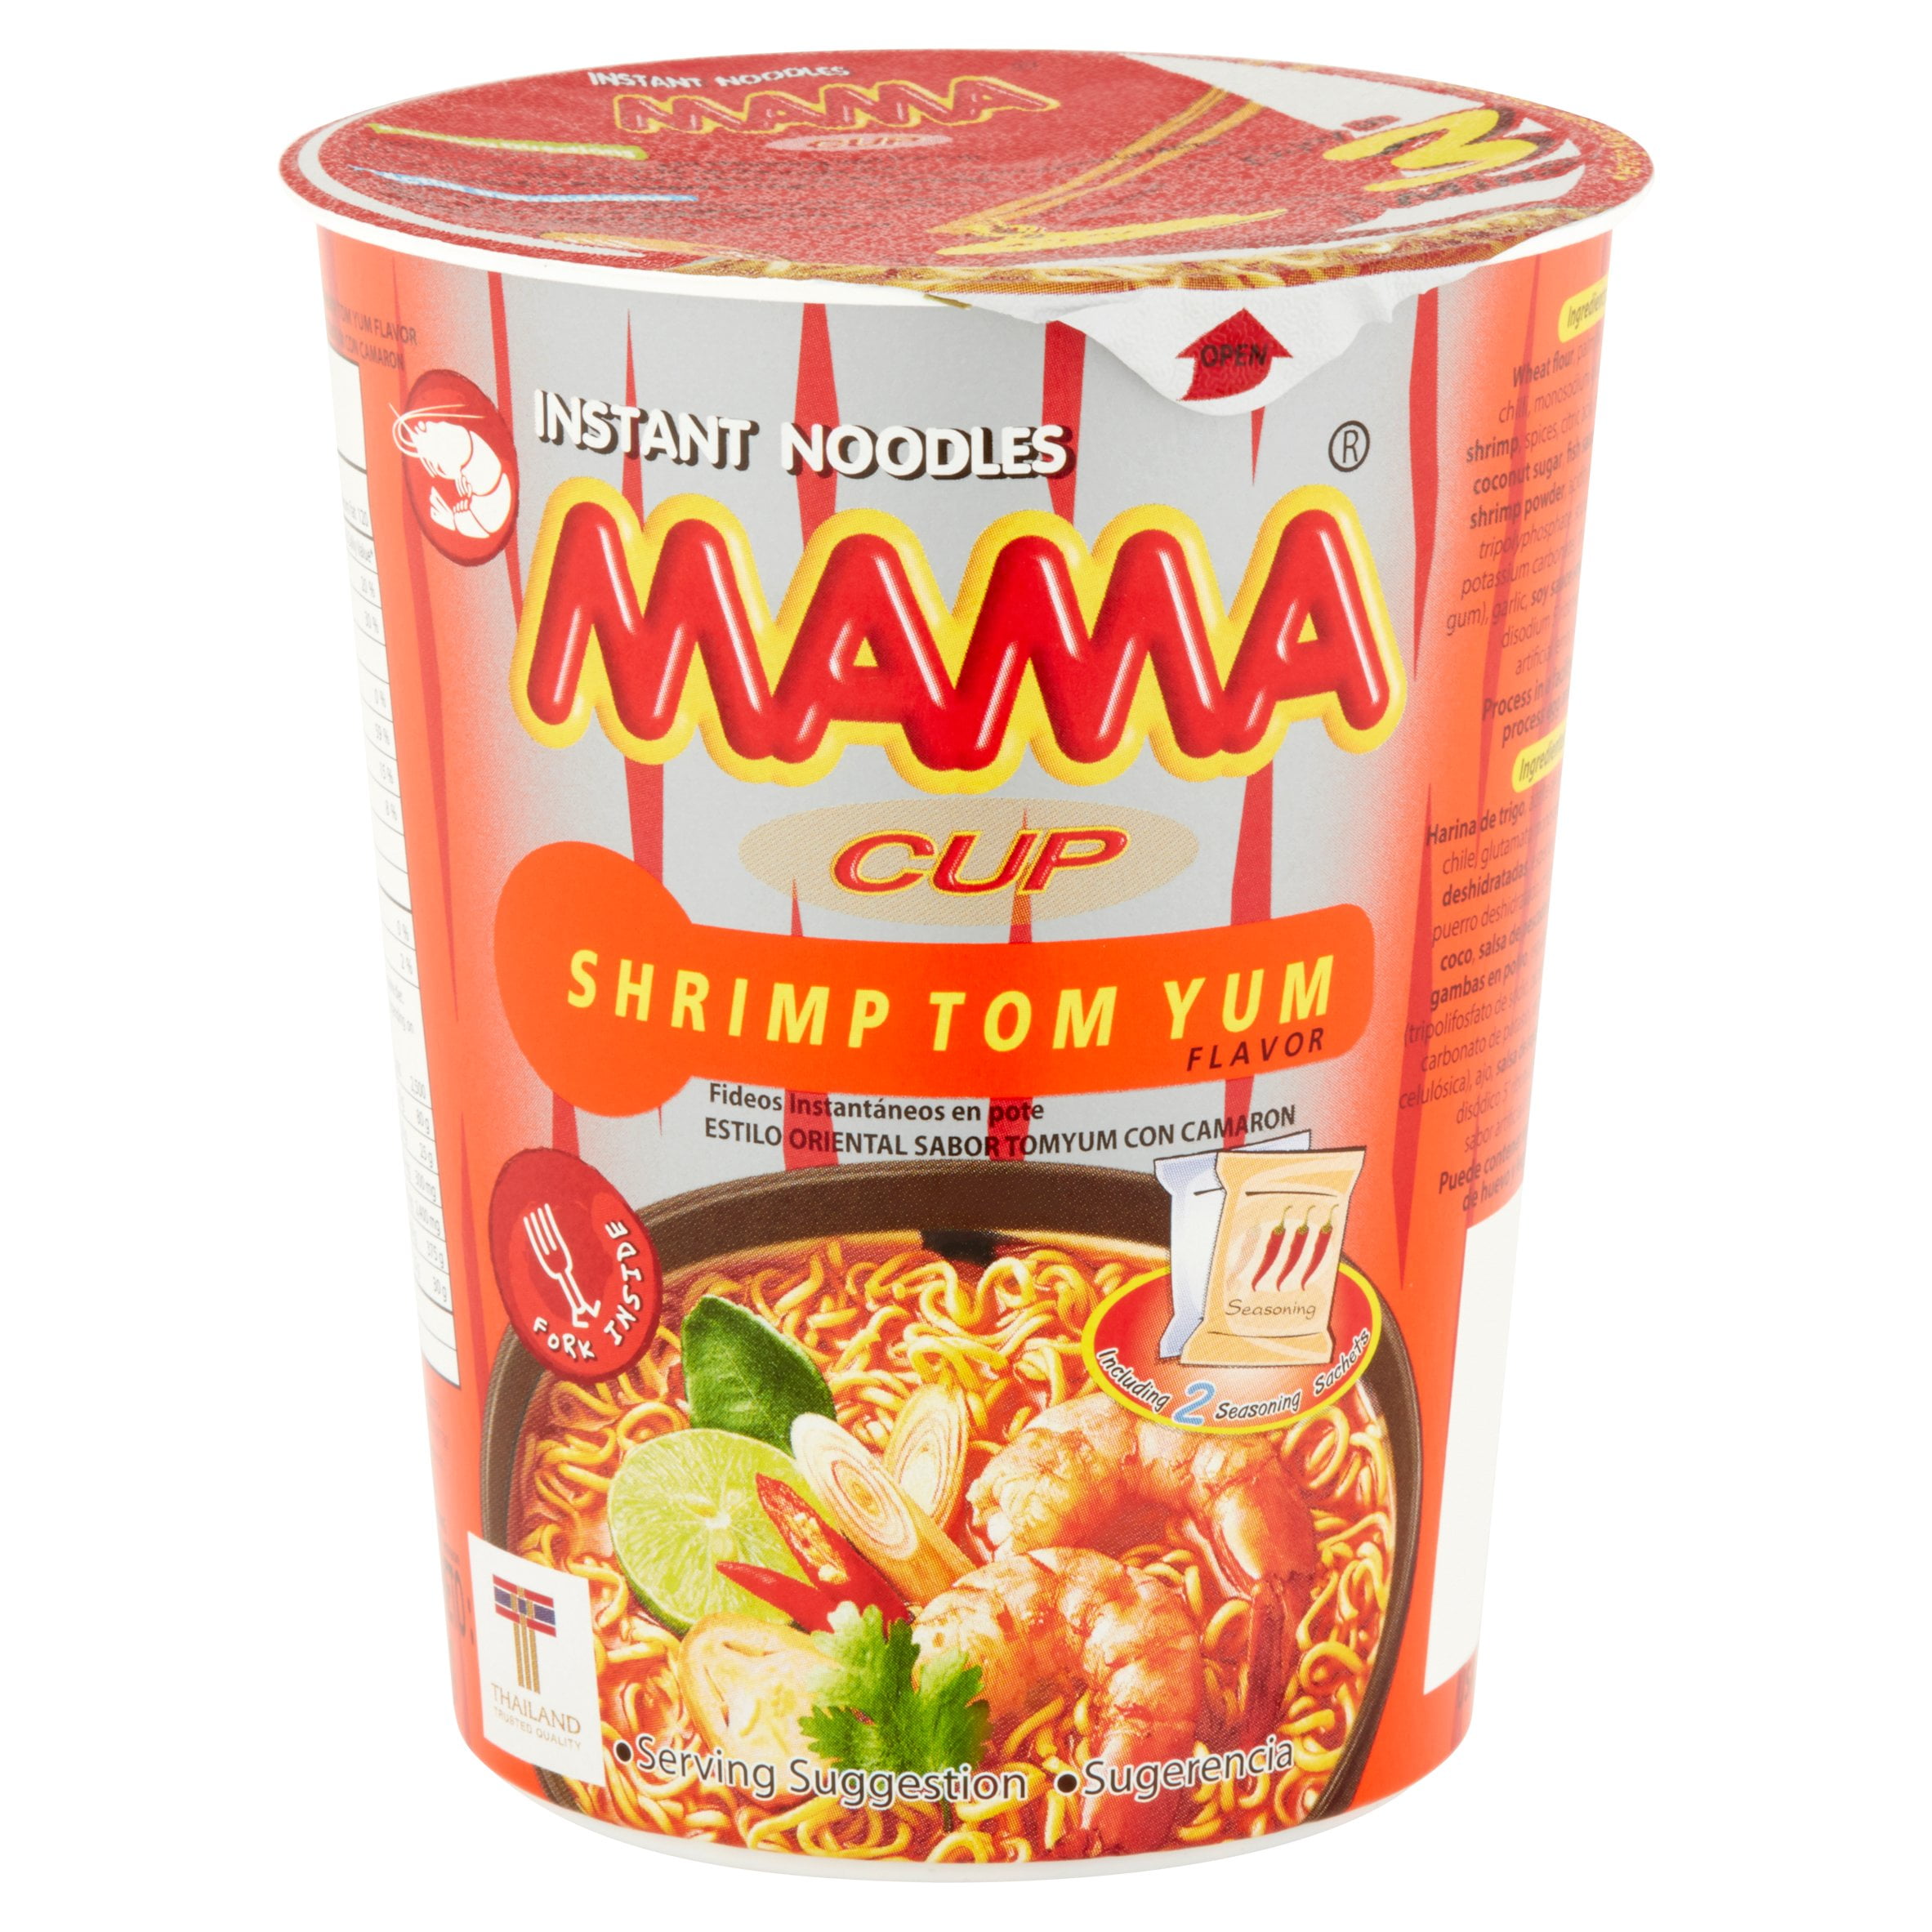 SUPA IGA Blaxland - Mama Cup Noodles Tom Yum Shrimp 70gm